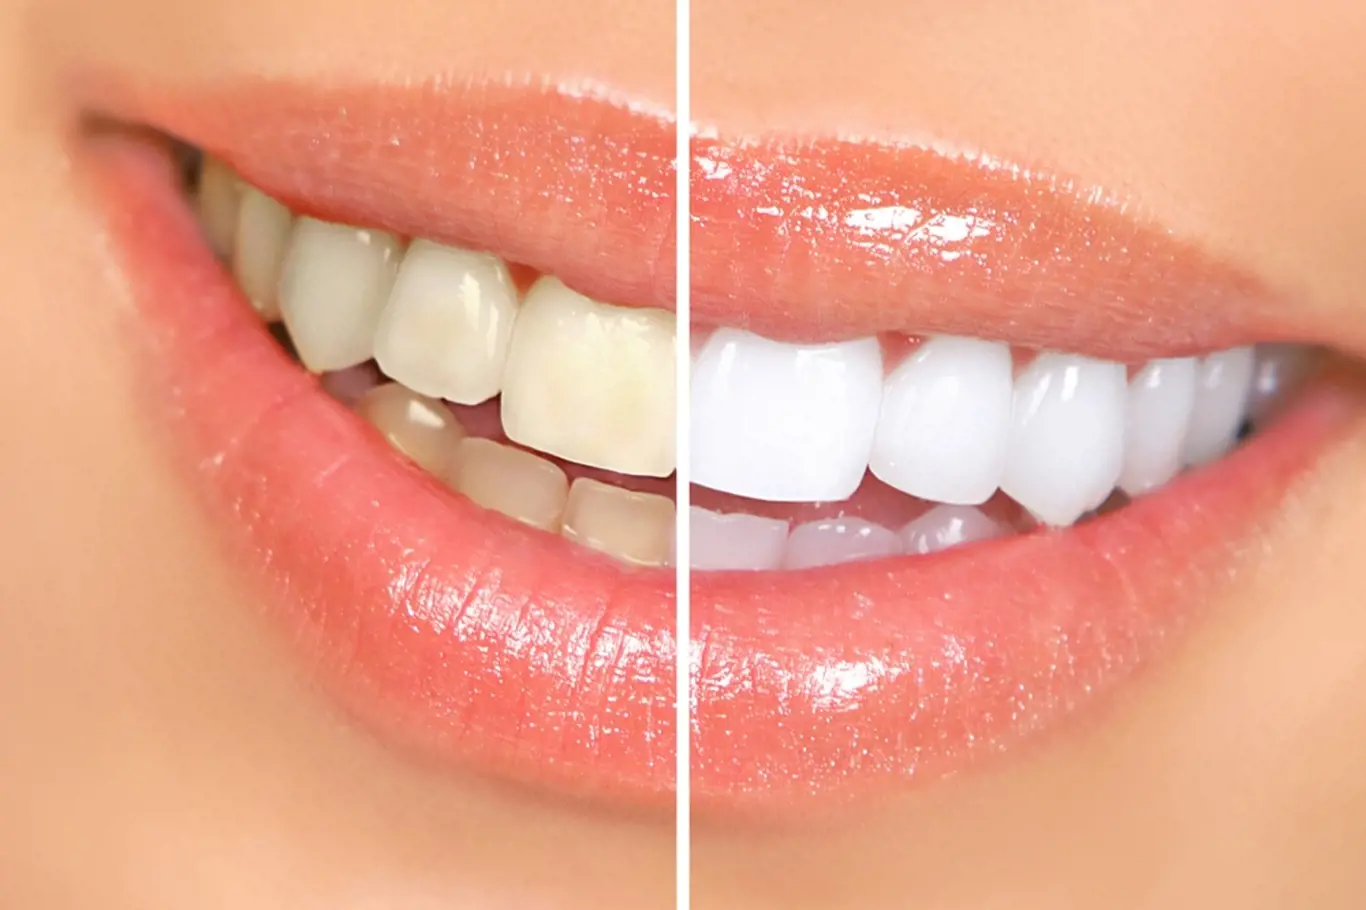 Bílé zuby působí zdravějším dojmem.